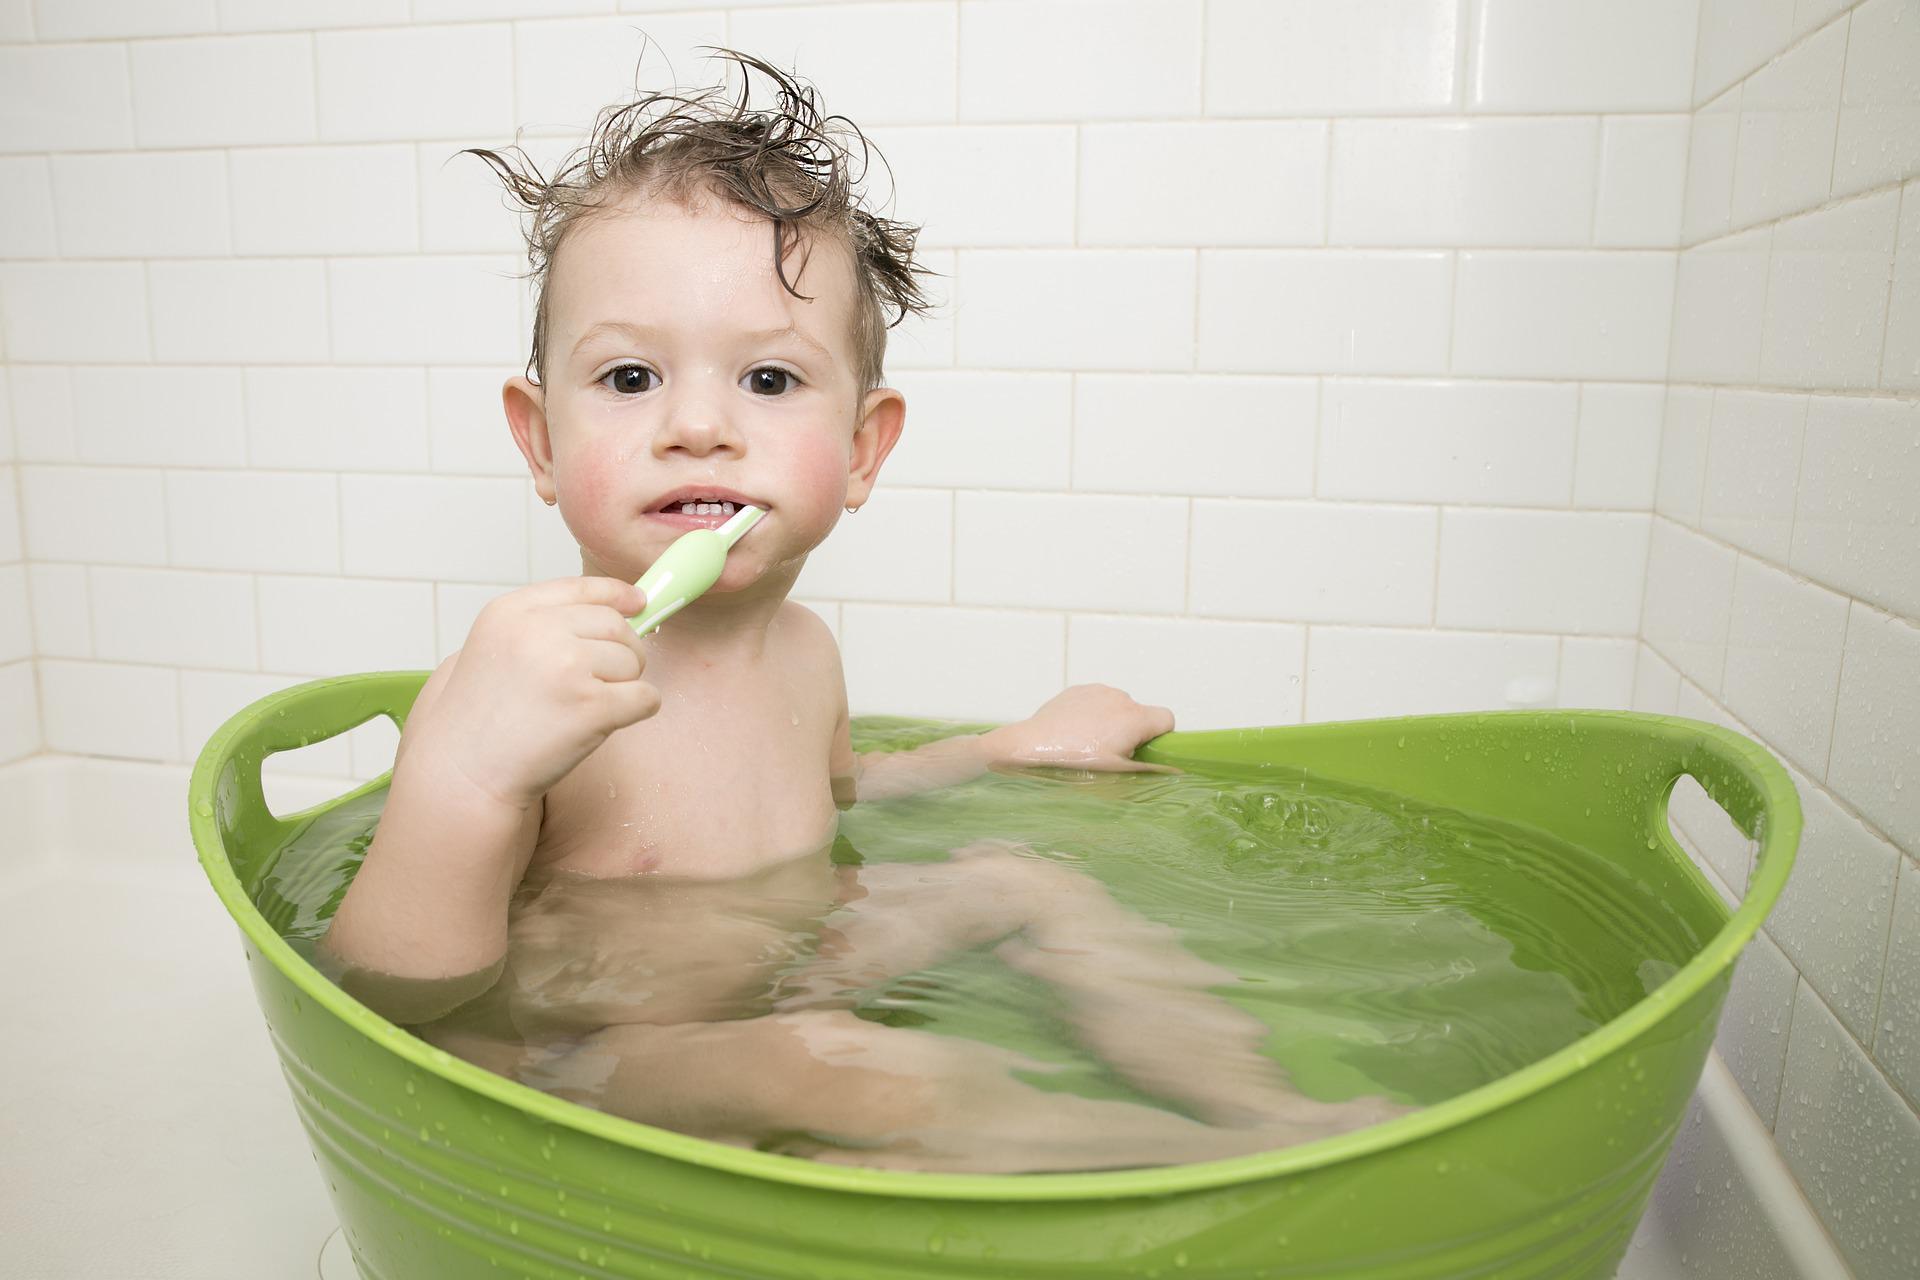 Yenidoğan bebekler hangi sıklıkta yıkanmalıdır Bebeğin banyosu kaç günde bir olmalıdır